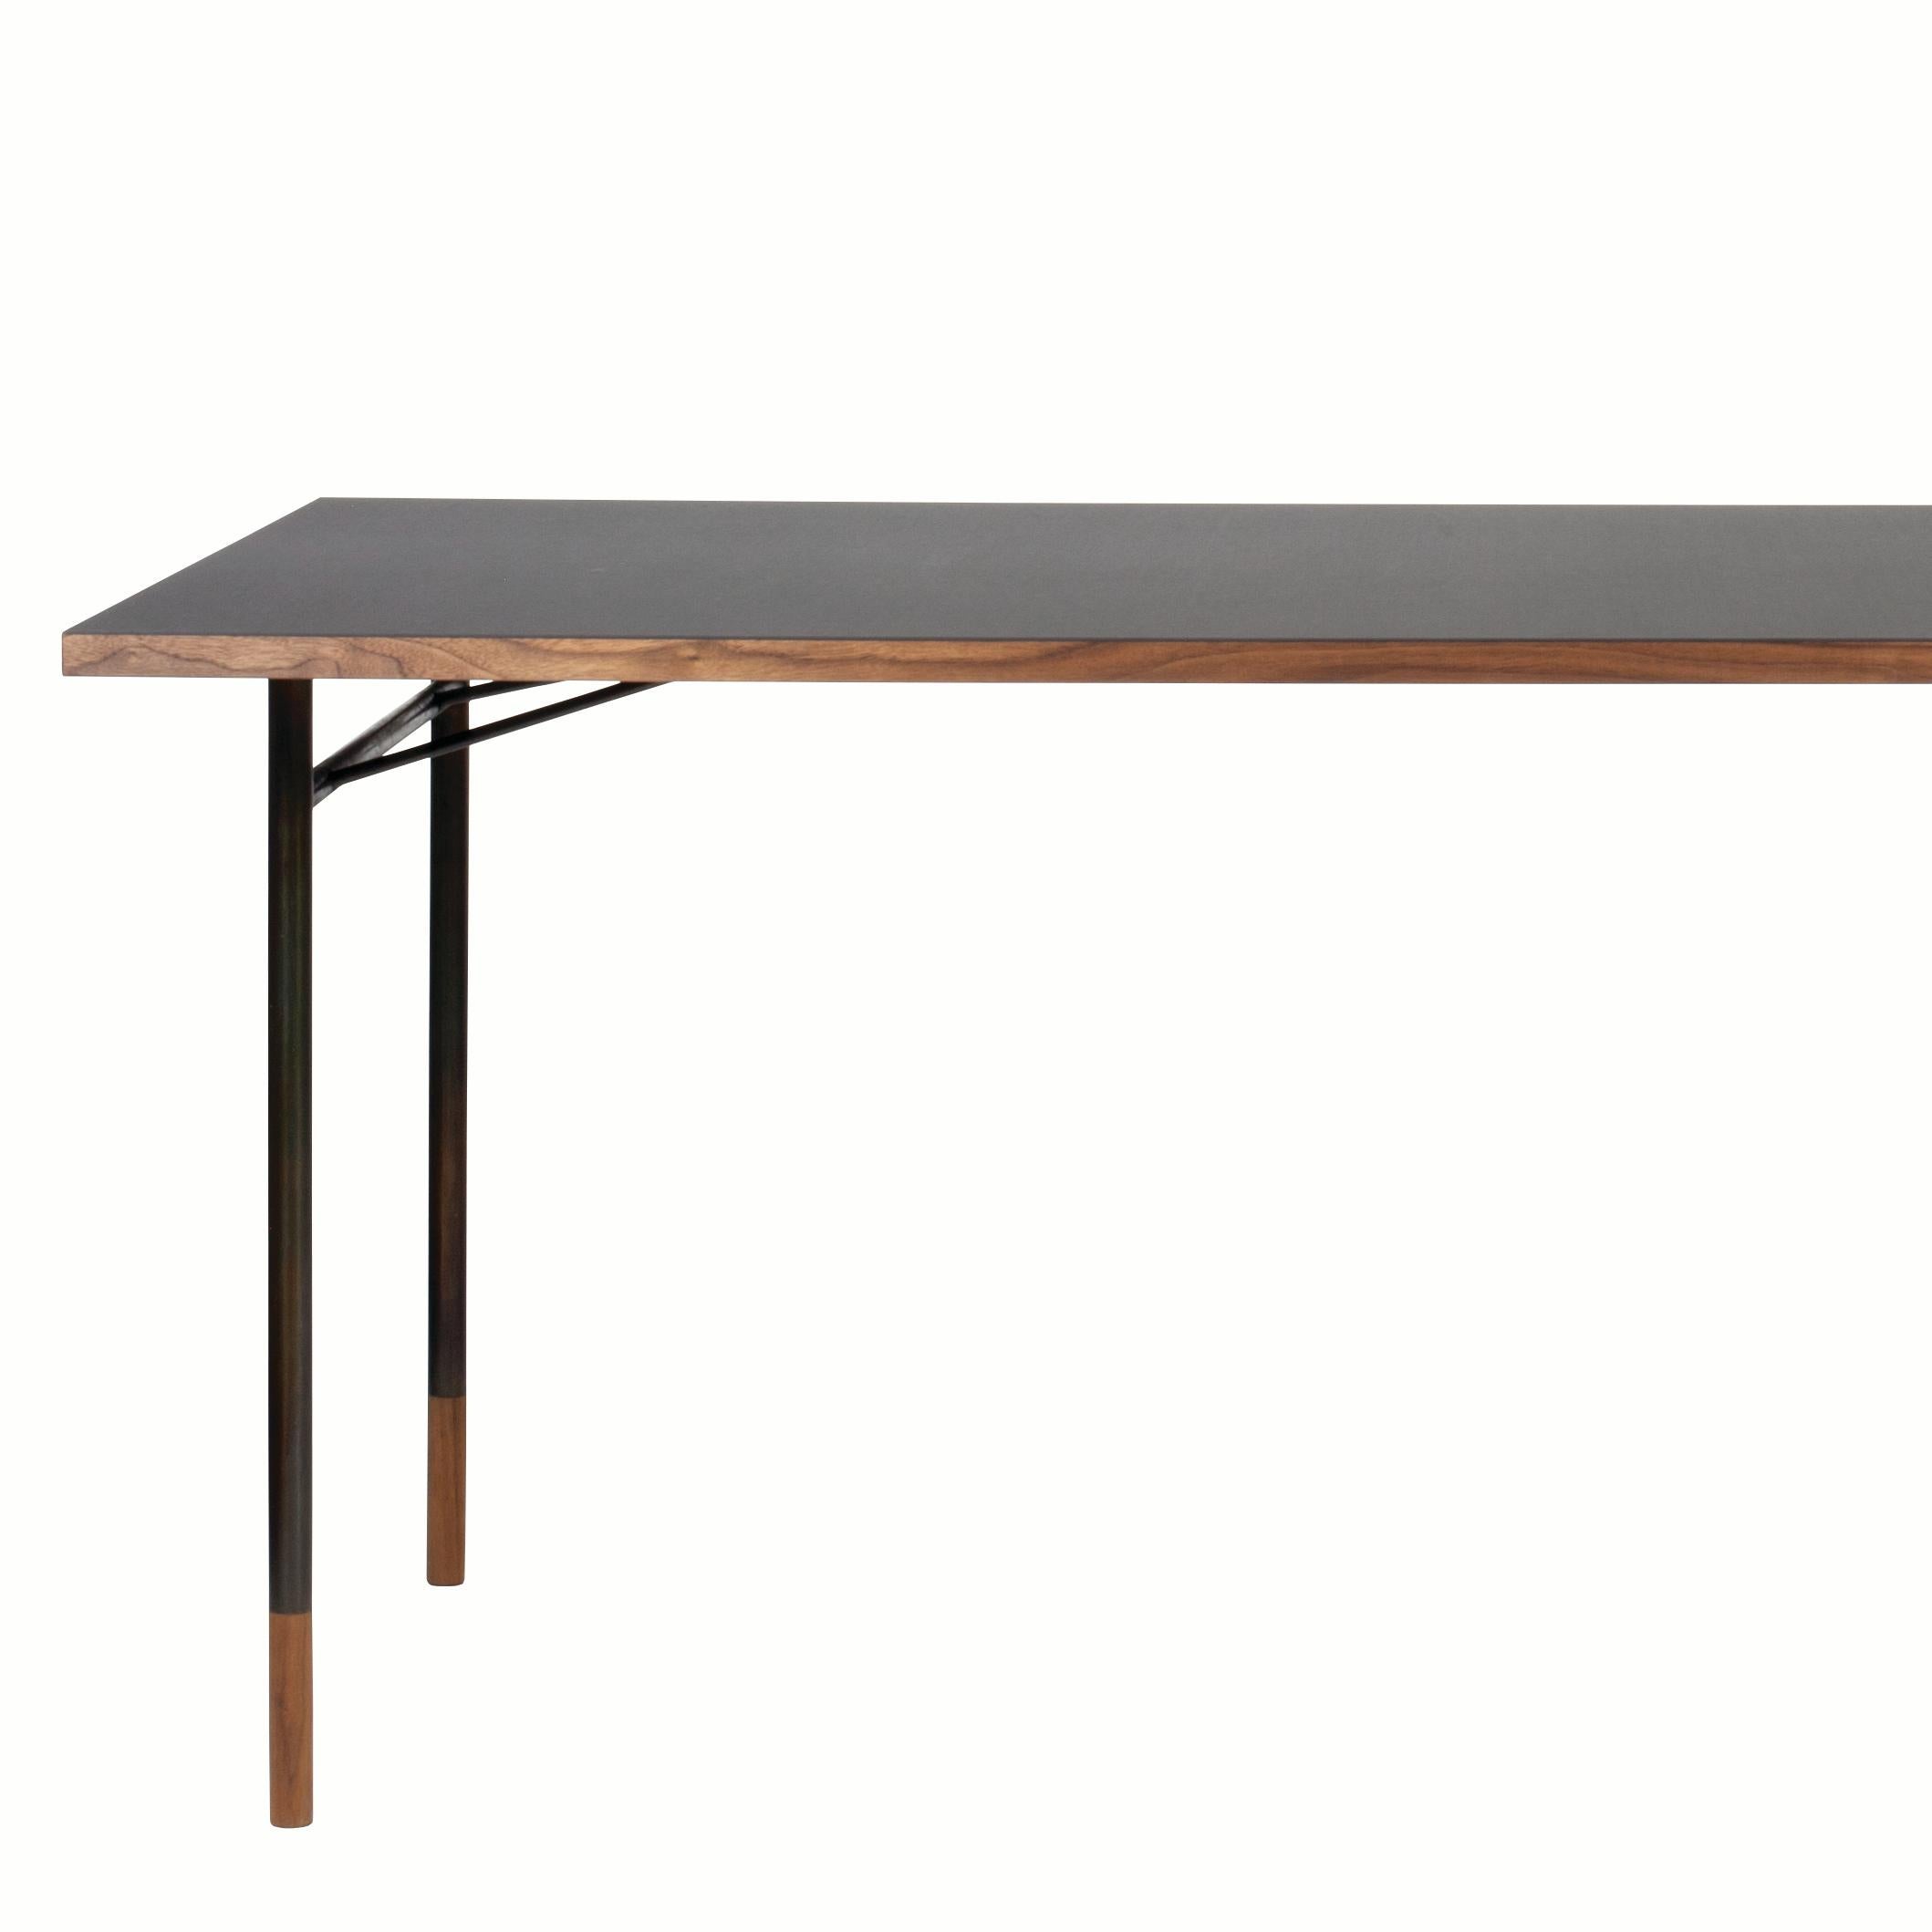 Bureau de table conçu par Finn Juhl en 1945, relancé en 2009. Fabriqué par la Maison Finn Juhl au Danemark.

Au cours de sa carrière, Finn Juhl a conçu une série de tables différentes avec des pieds presque invisibles en acier bruni ou peint avec